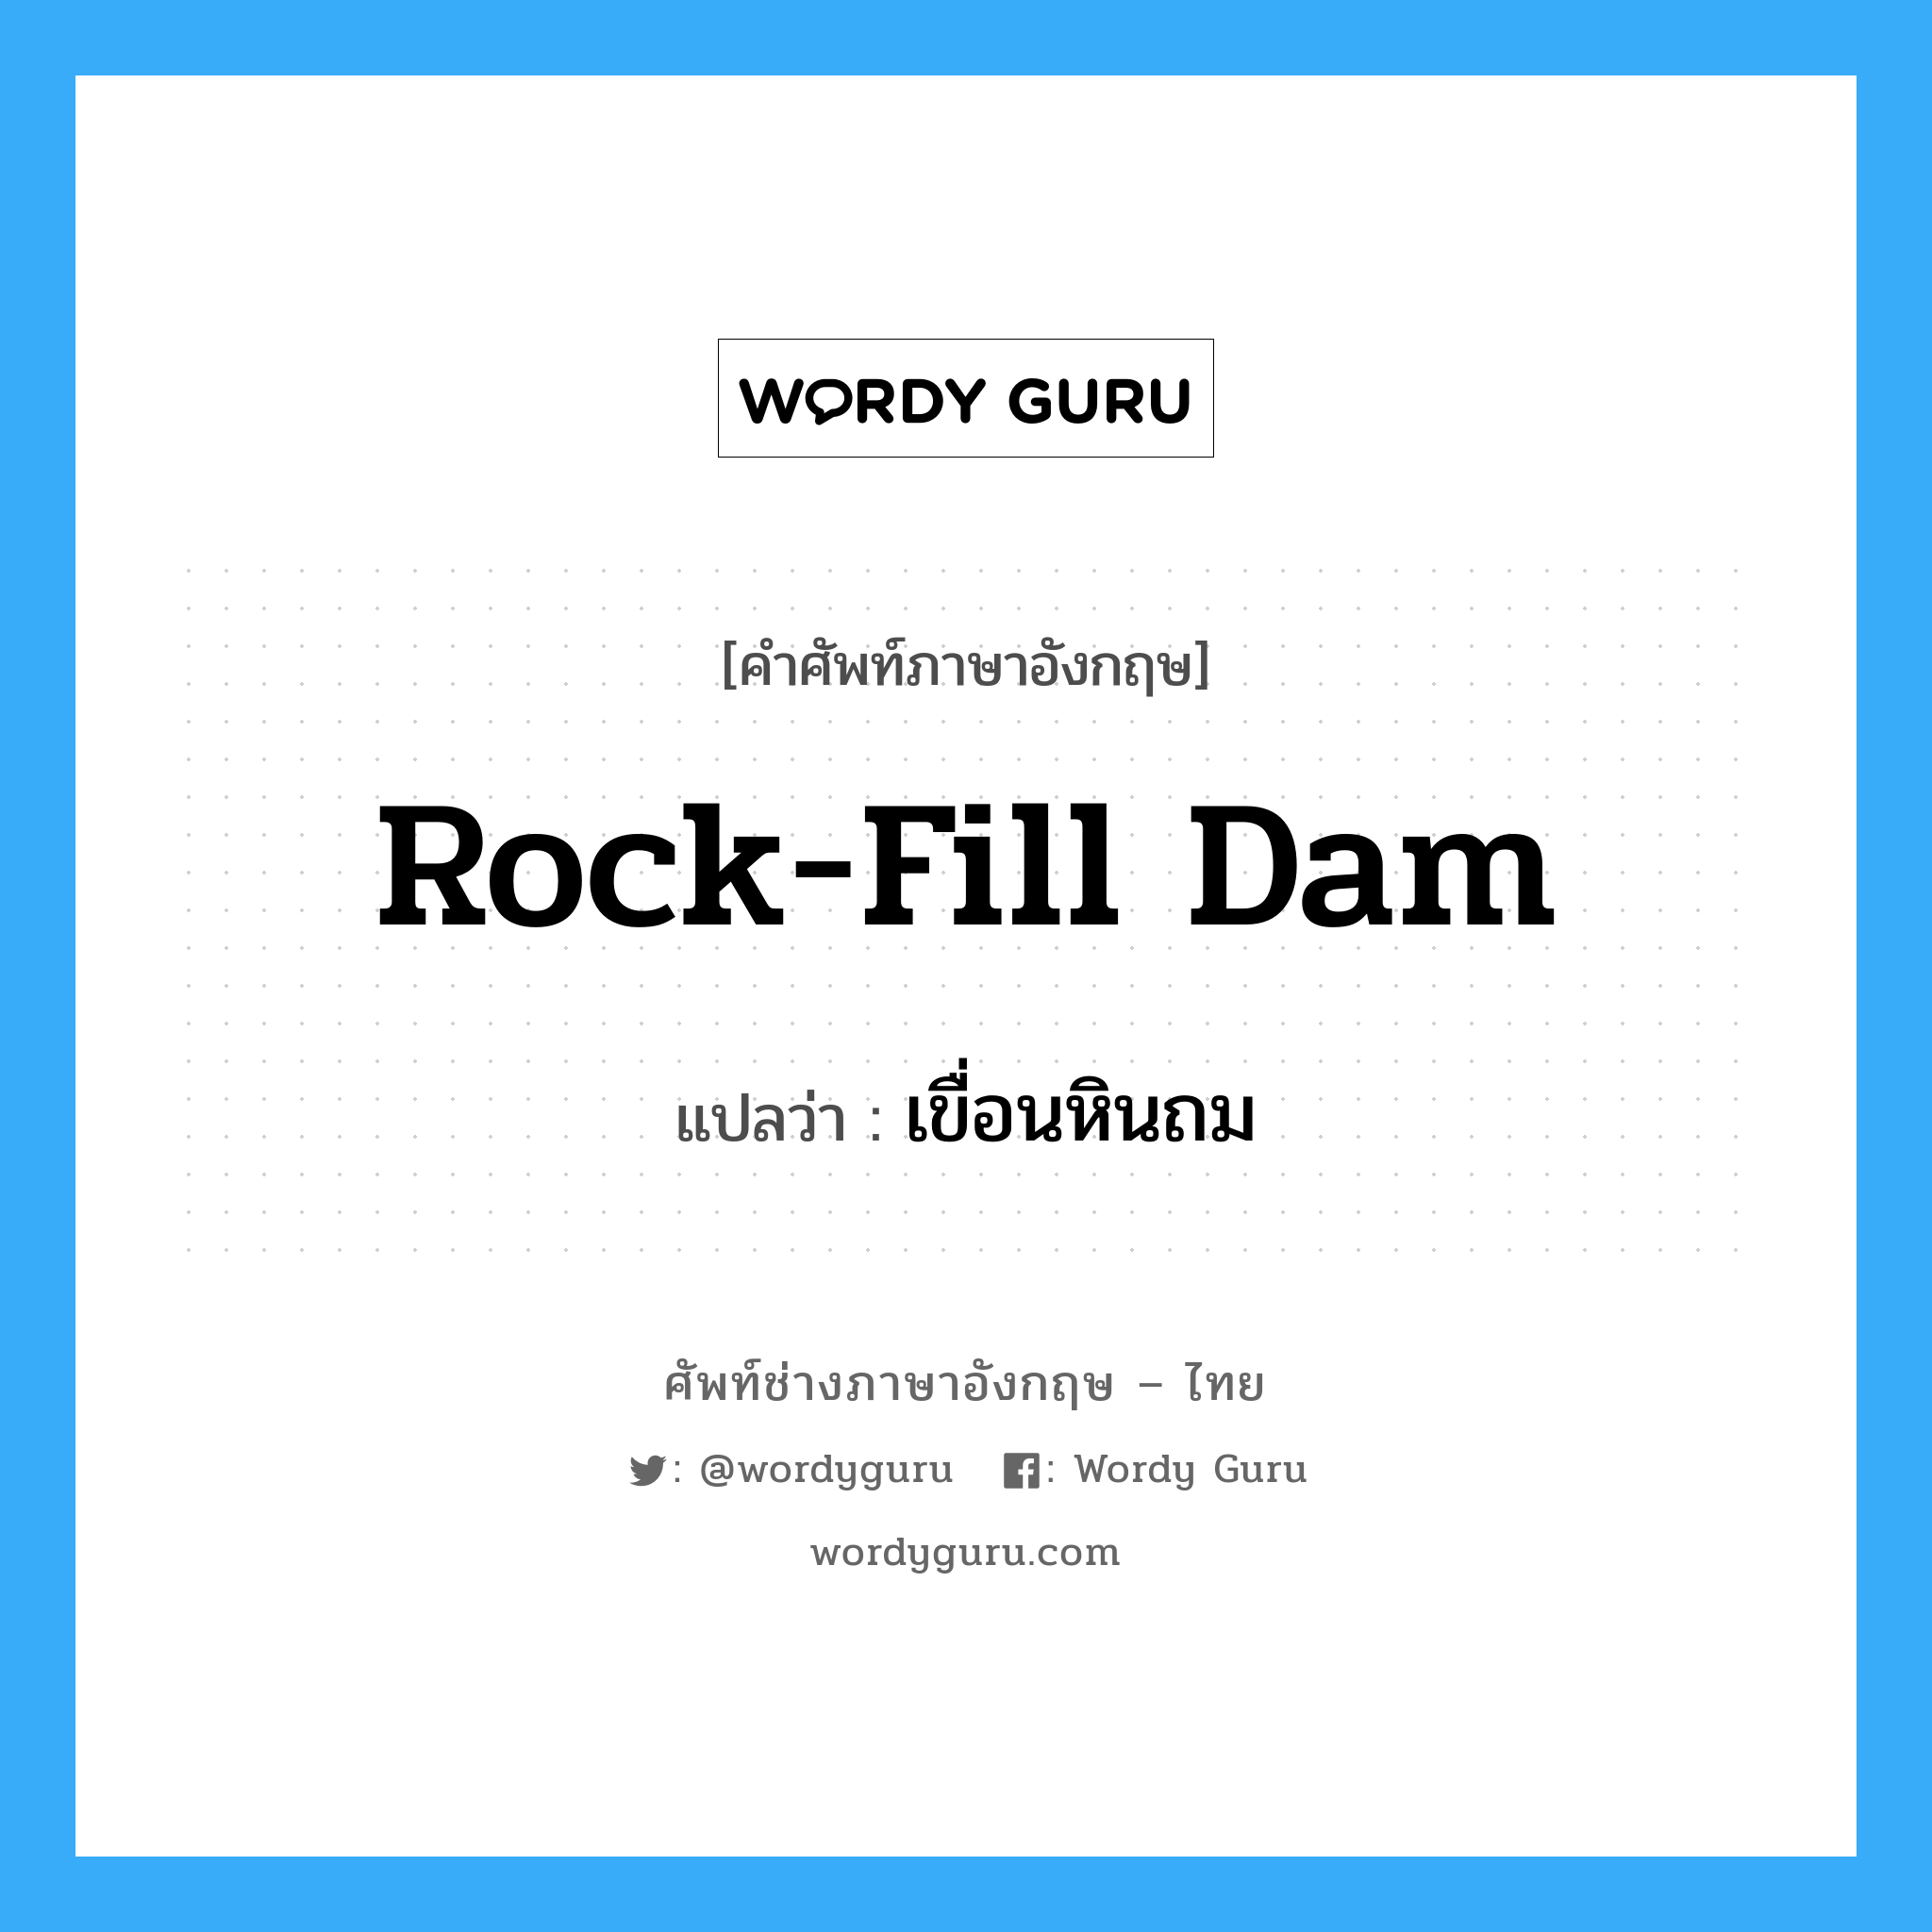 rock-fill dam แปลว่า?, คำศัพท์ช่างภาษาอังกฤษ - ไทย rock-fill dam คำศัพท์ภาษาอังกฤษ rock-fill dam แปลว่า เขื่อนหินถม